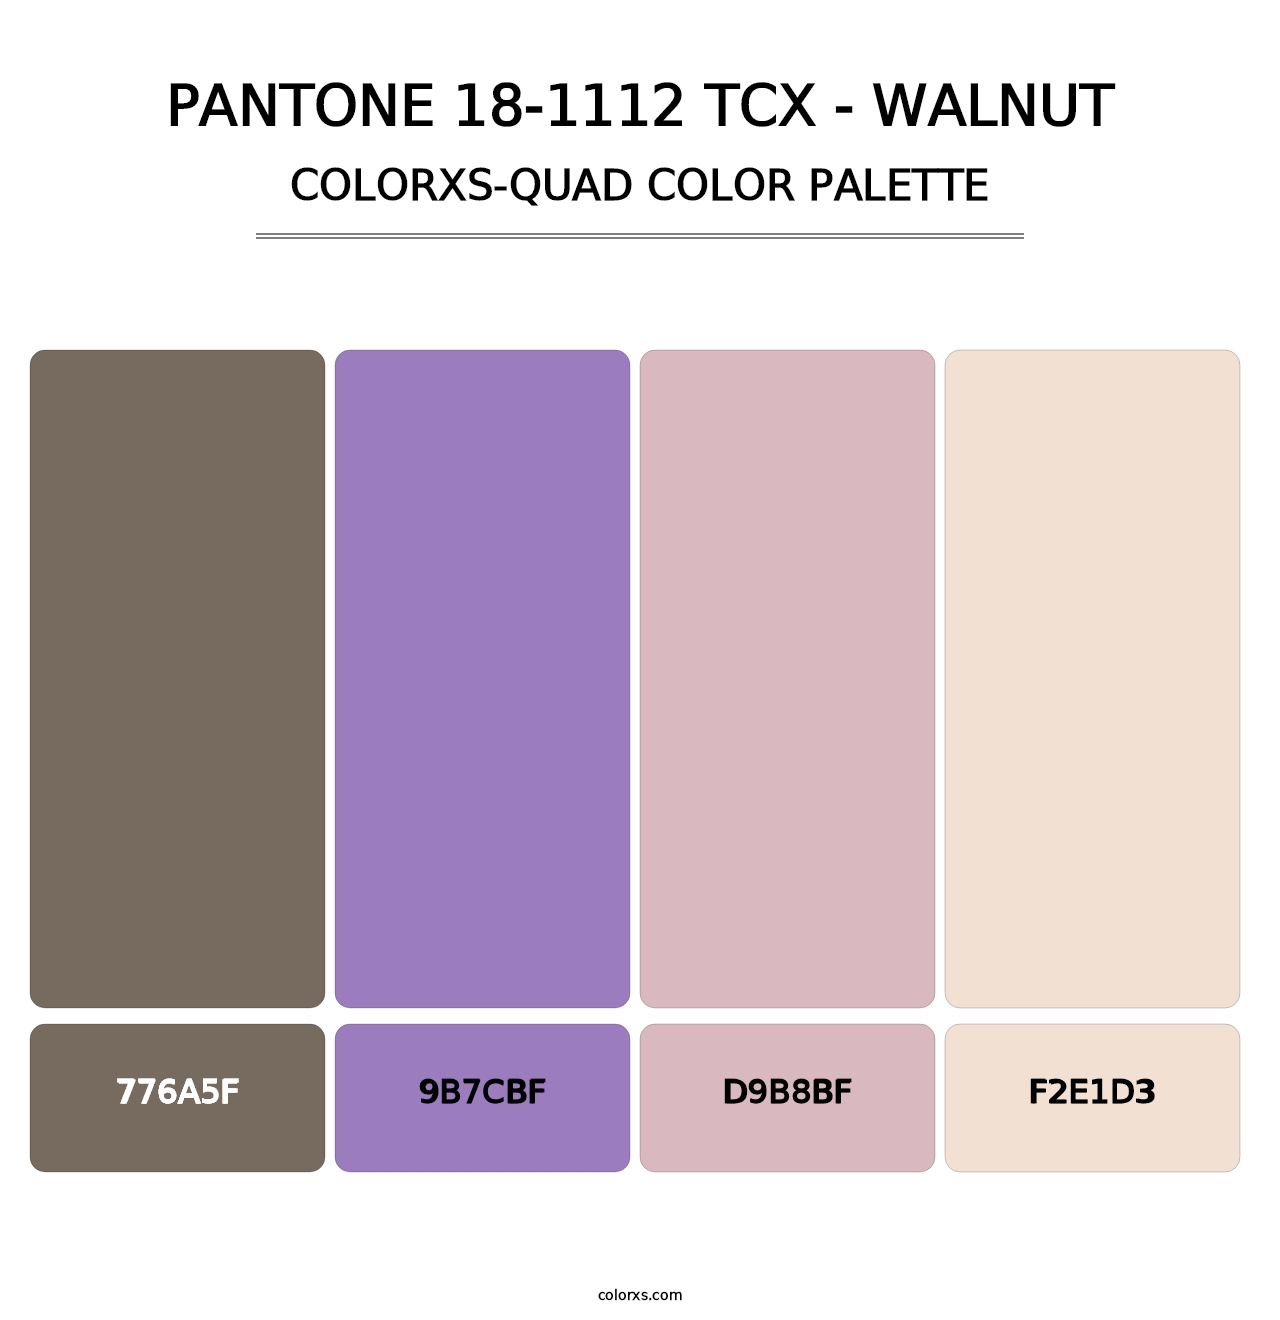 PANTONE 18-1112 TCX - Walnut - Colorxs Quad Palette